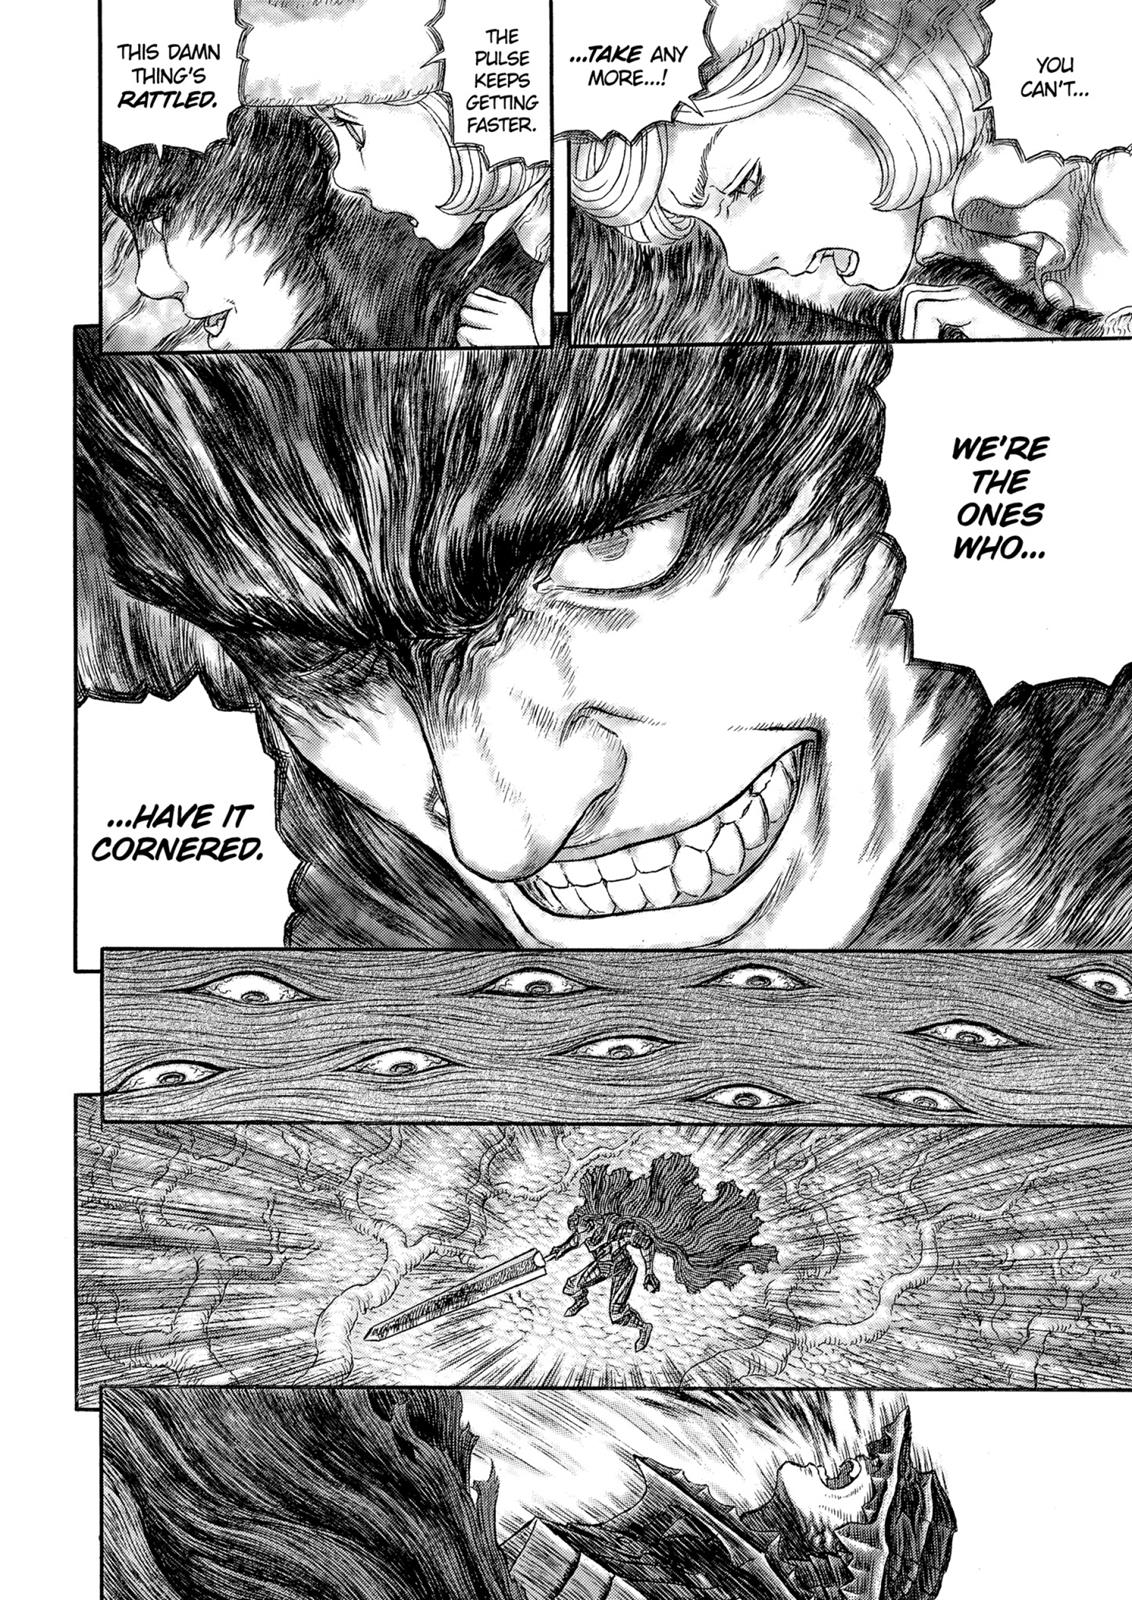 Berserk Manga Chapter 325 image 25